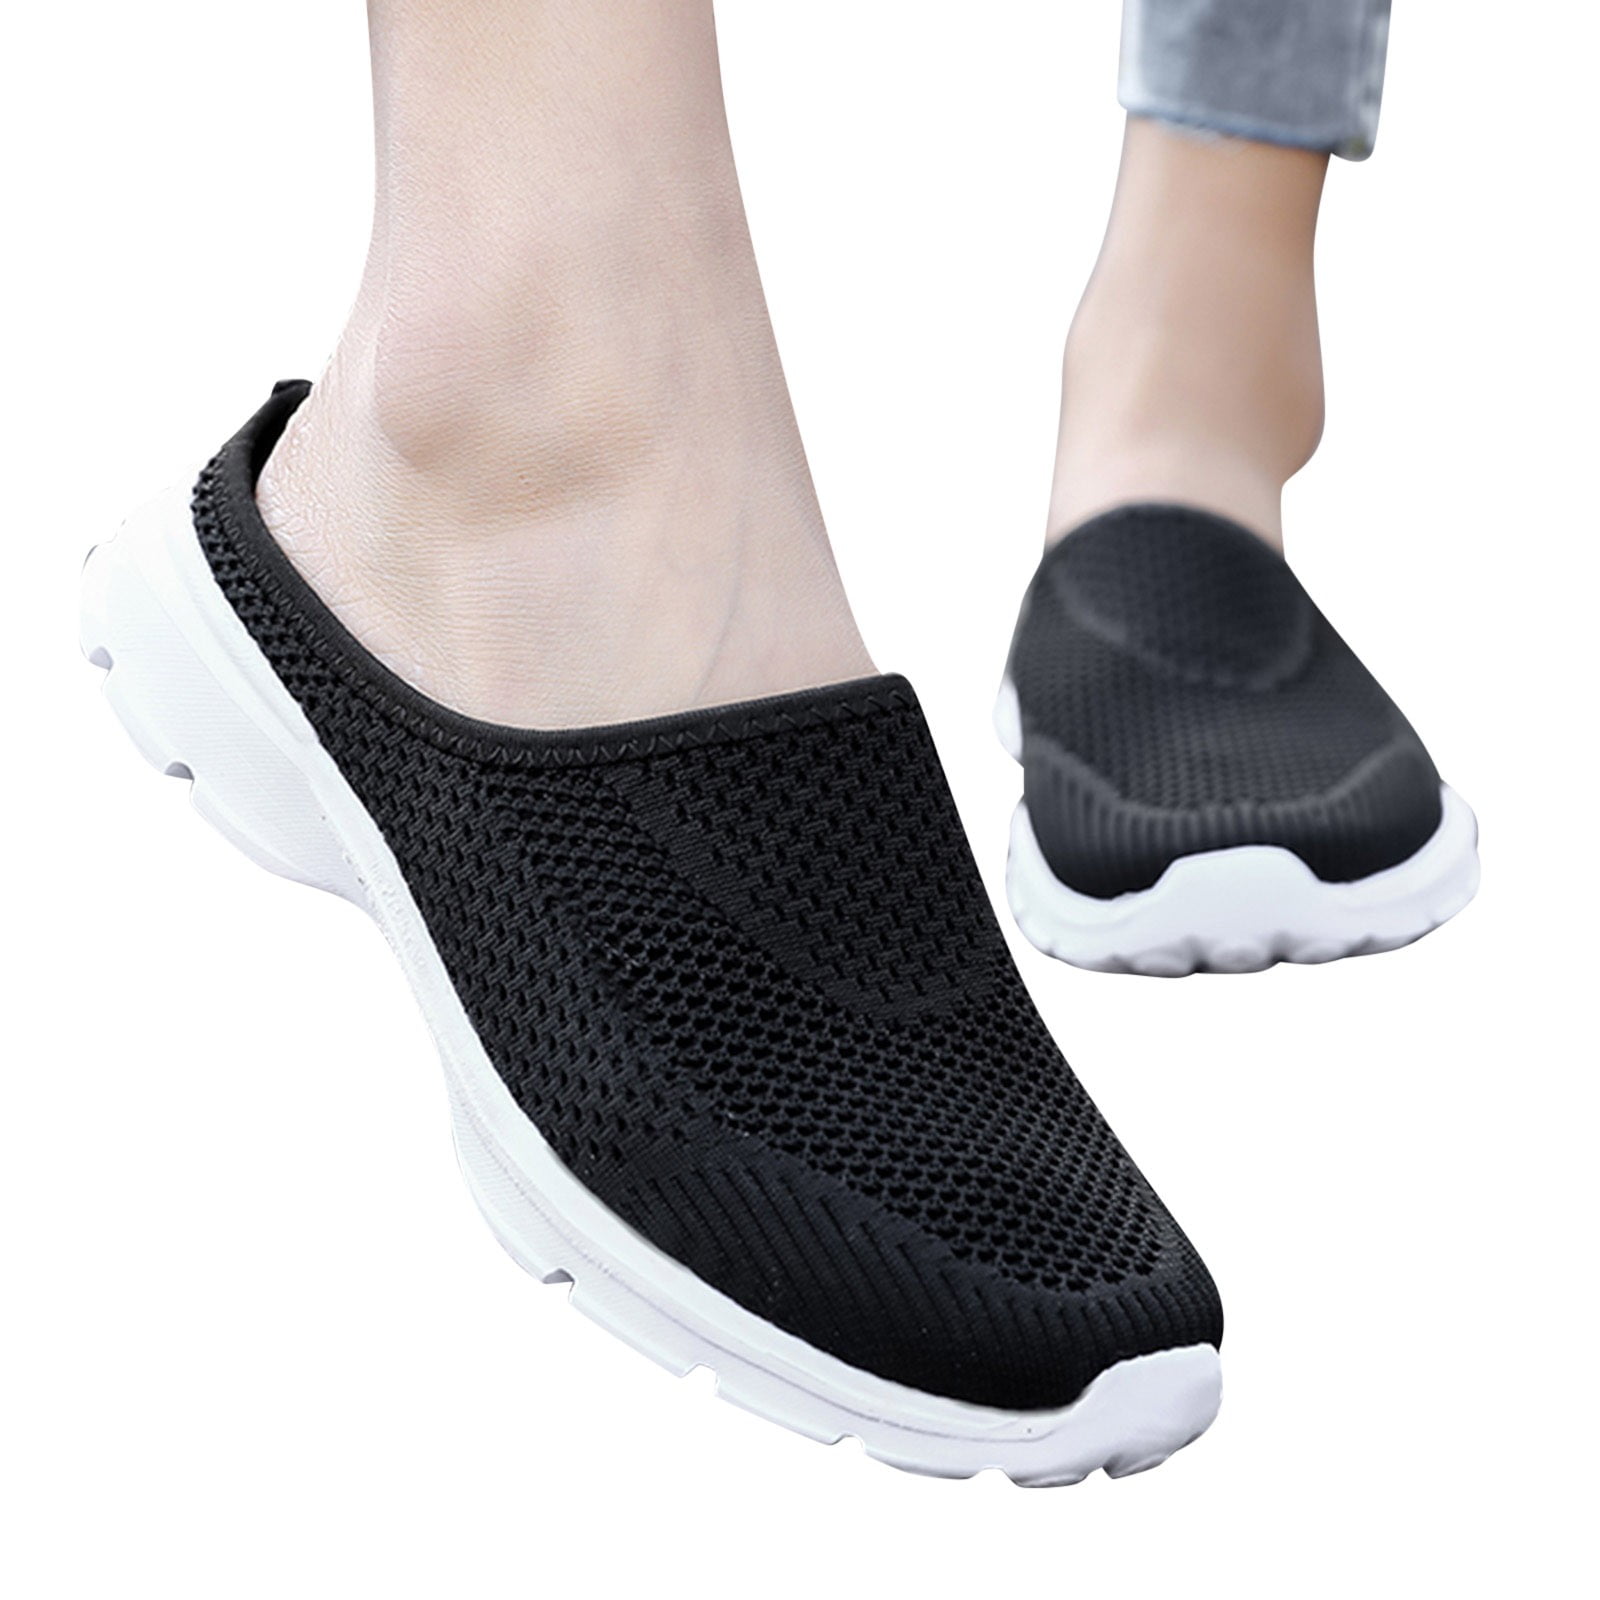 eczipvz Sneakers for Women Walking Running Shoes Women - Orthopedic ...